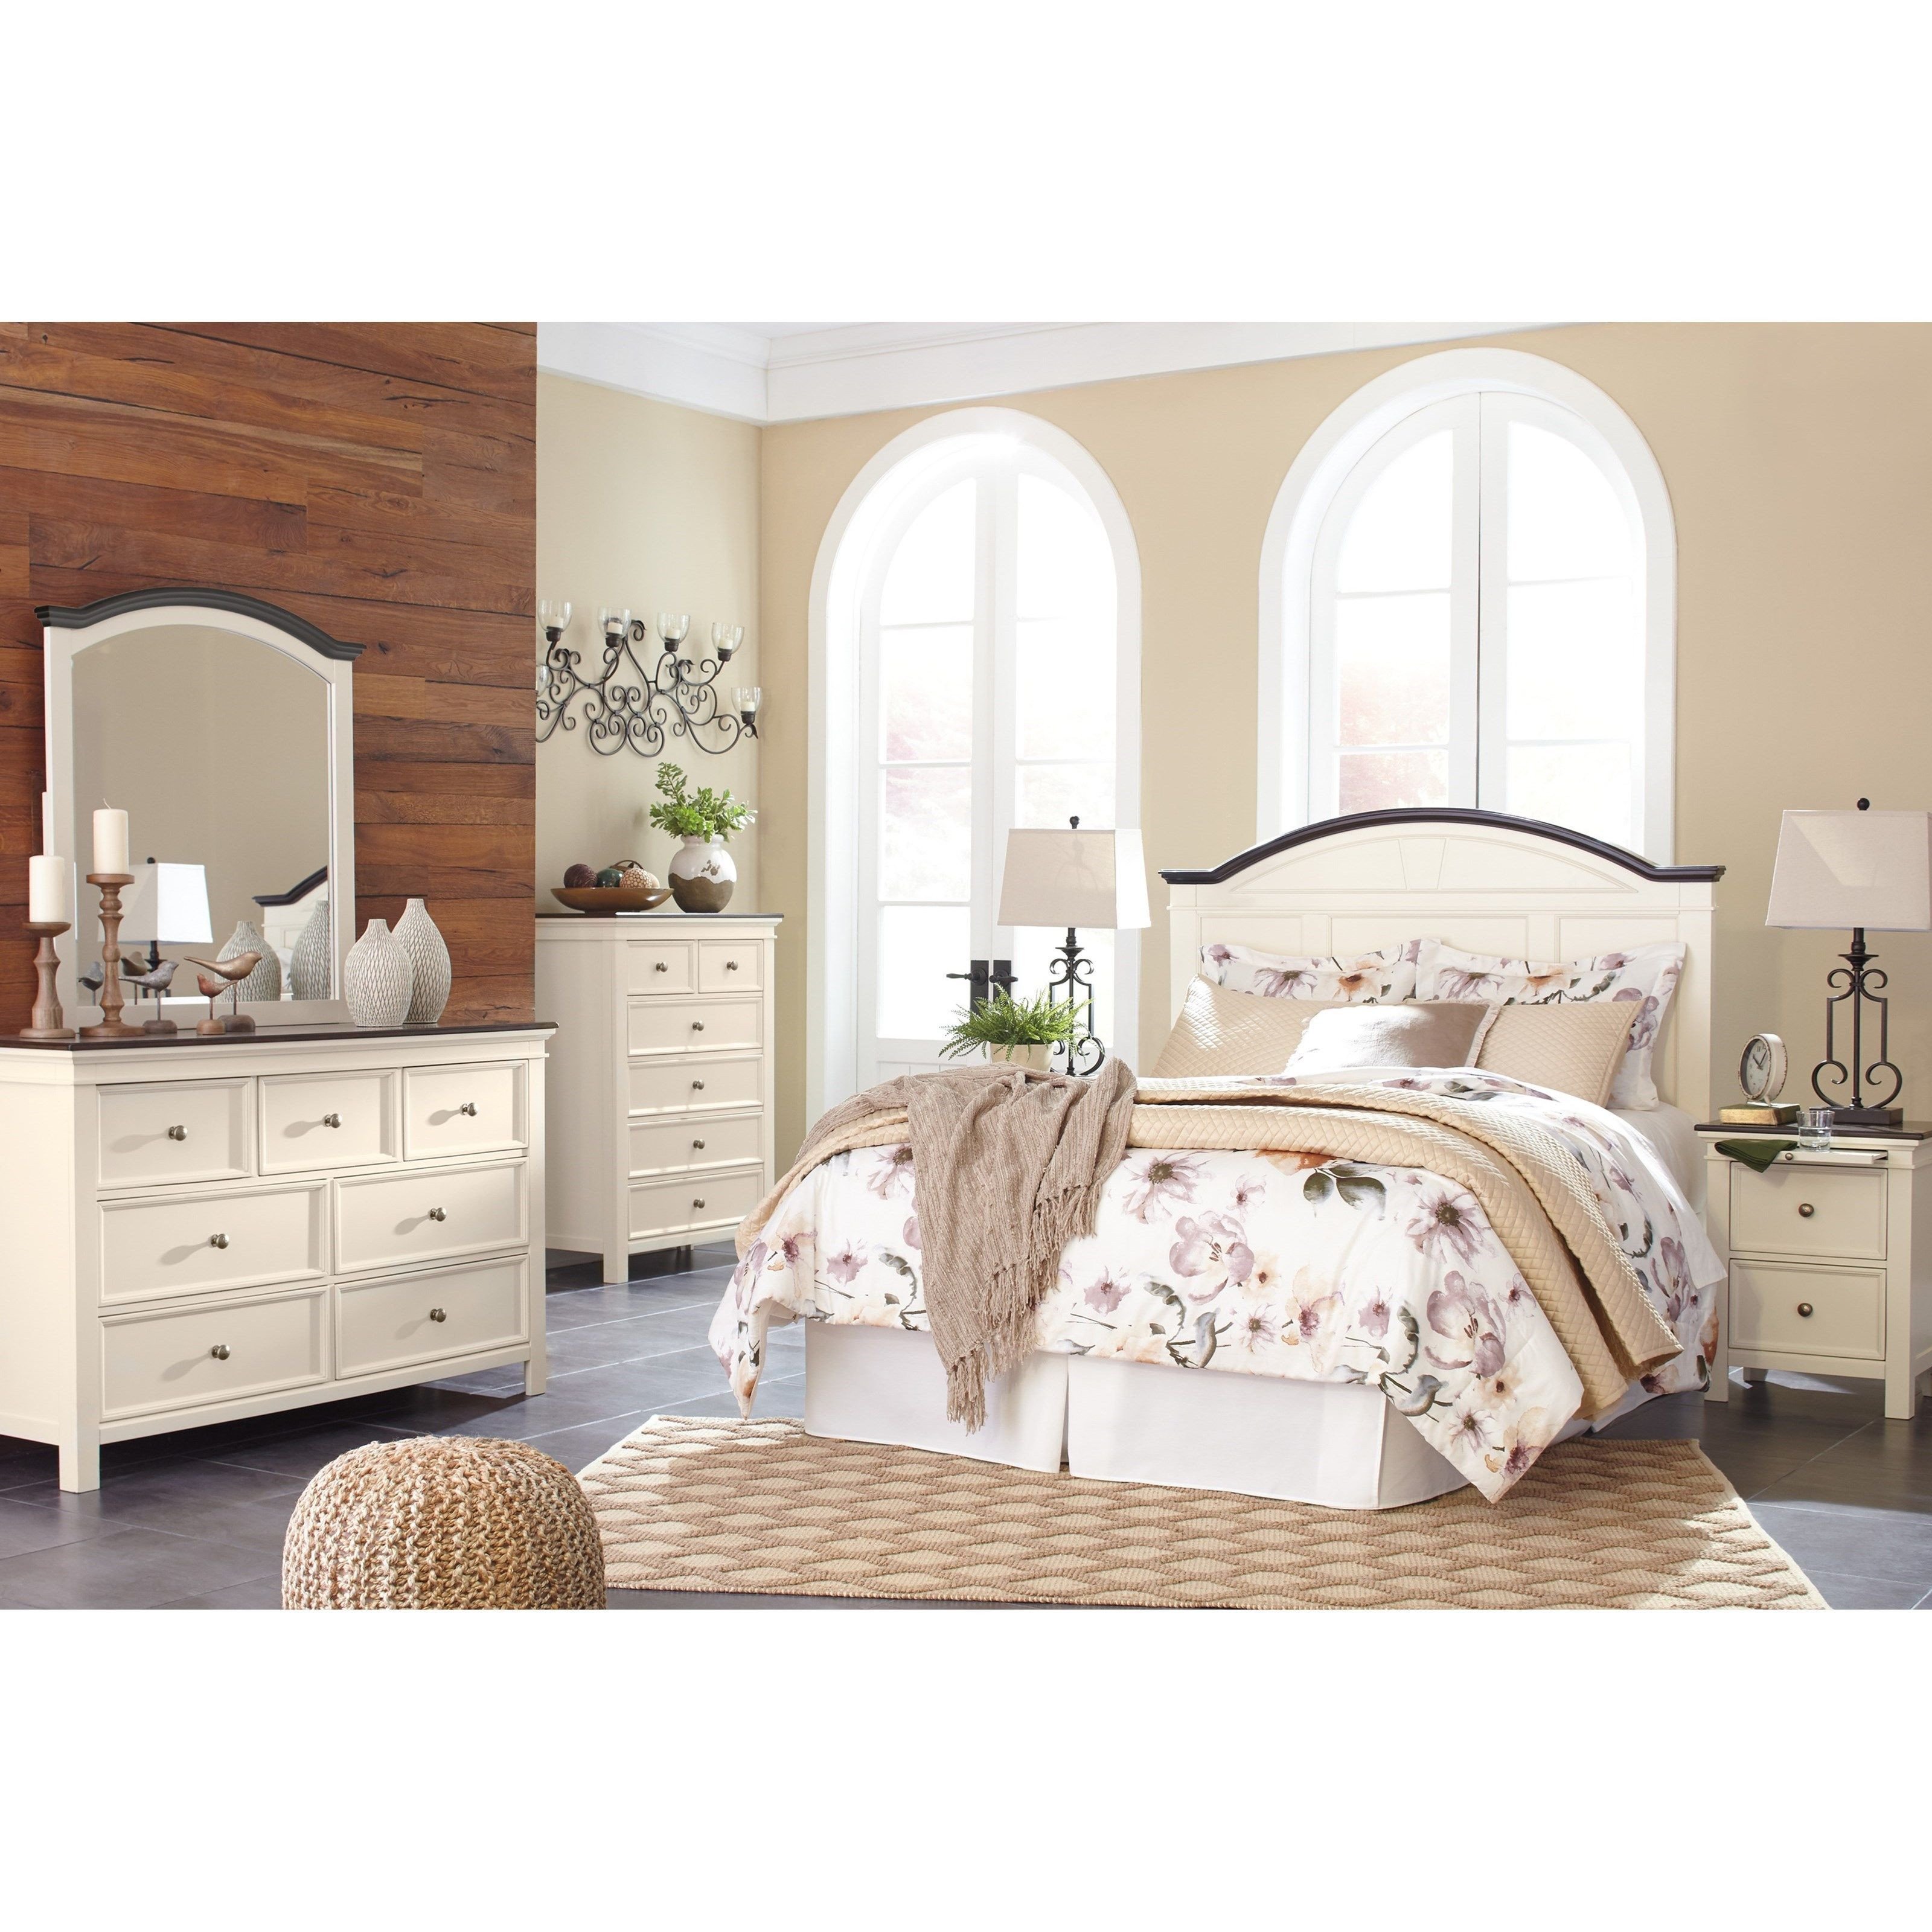 Mirrored Queen Bedroom Set Beautiful Woodanville Queen Bedroom Group by Signature Design by